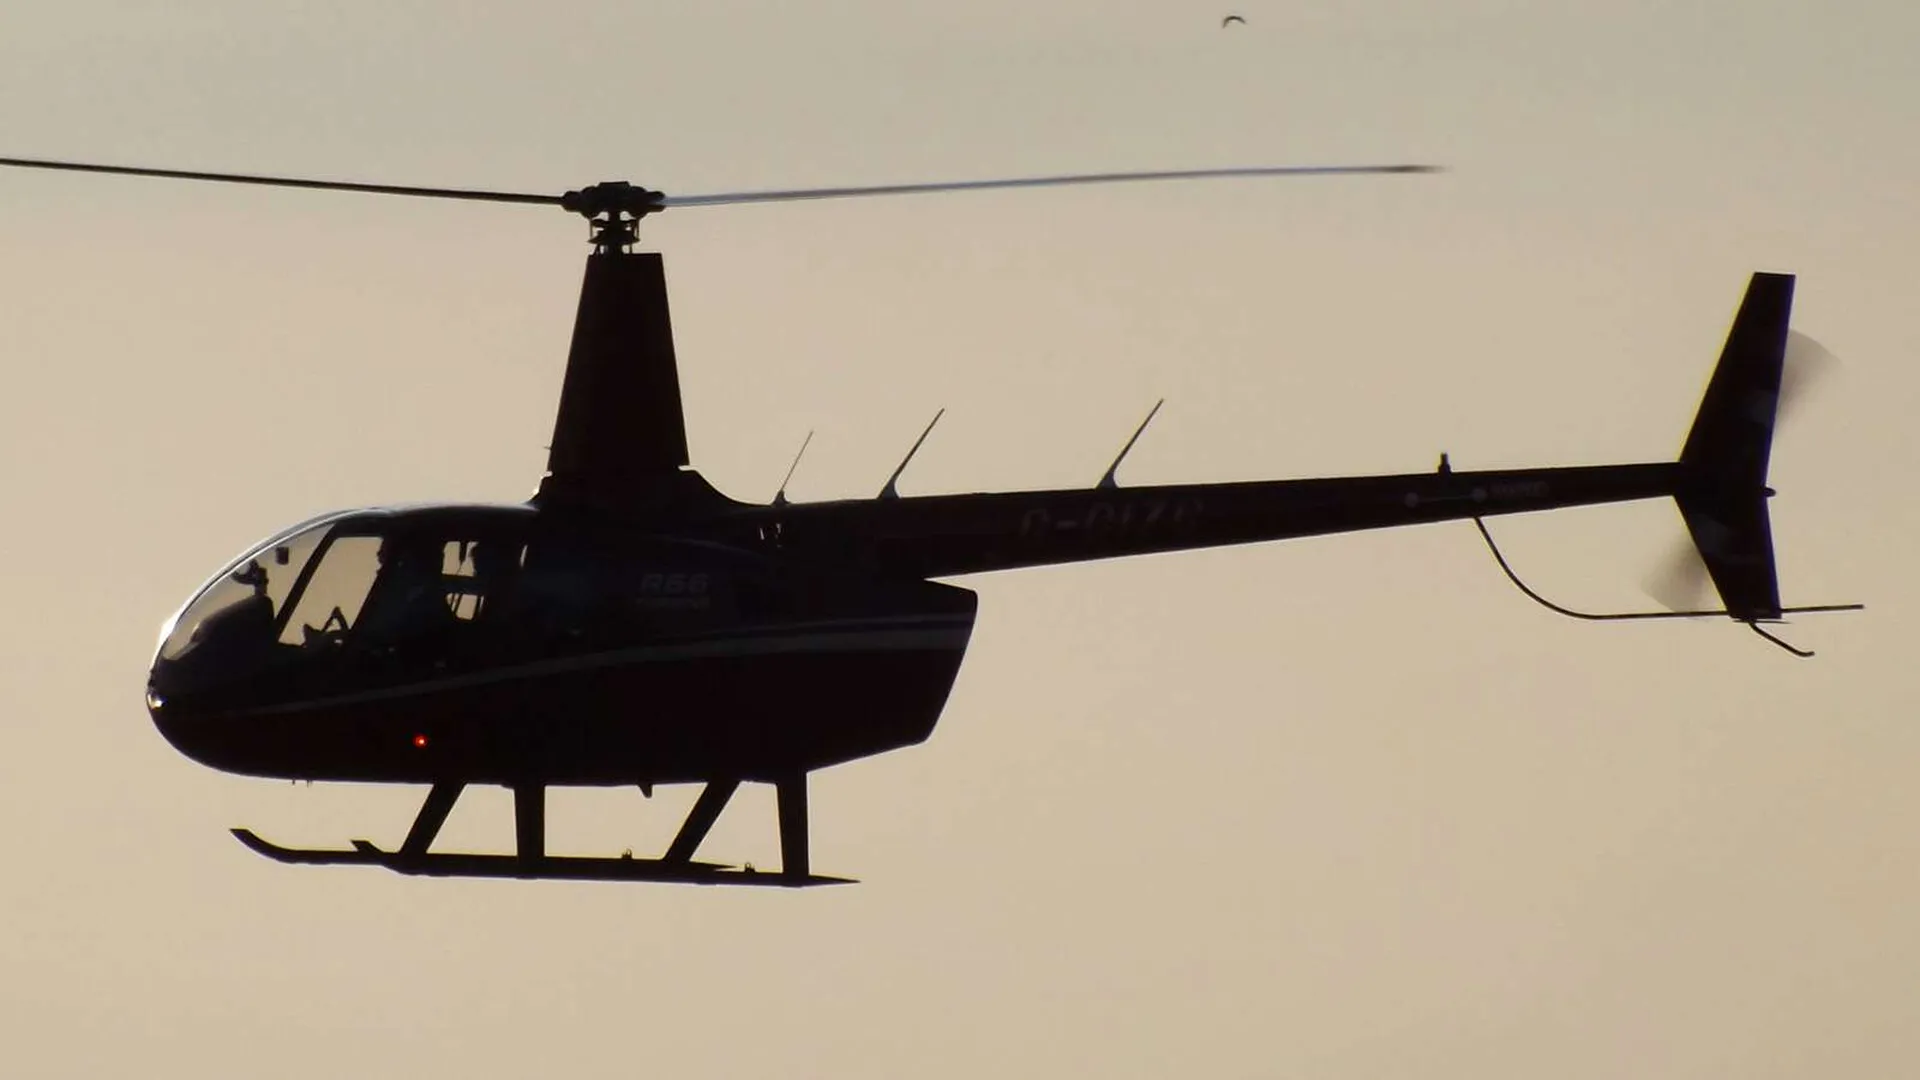 Большие новости 10 декабря. Крушение вертолета, казанский стрелок говорит о раскаянии, Ассанжа сдадут США